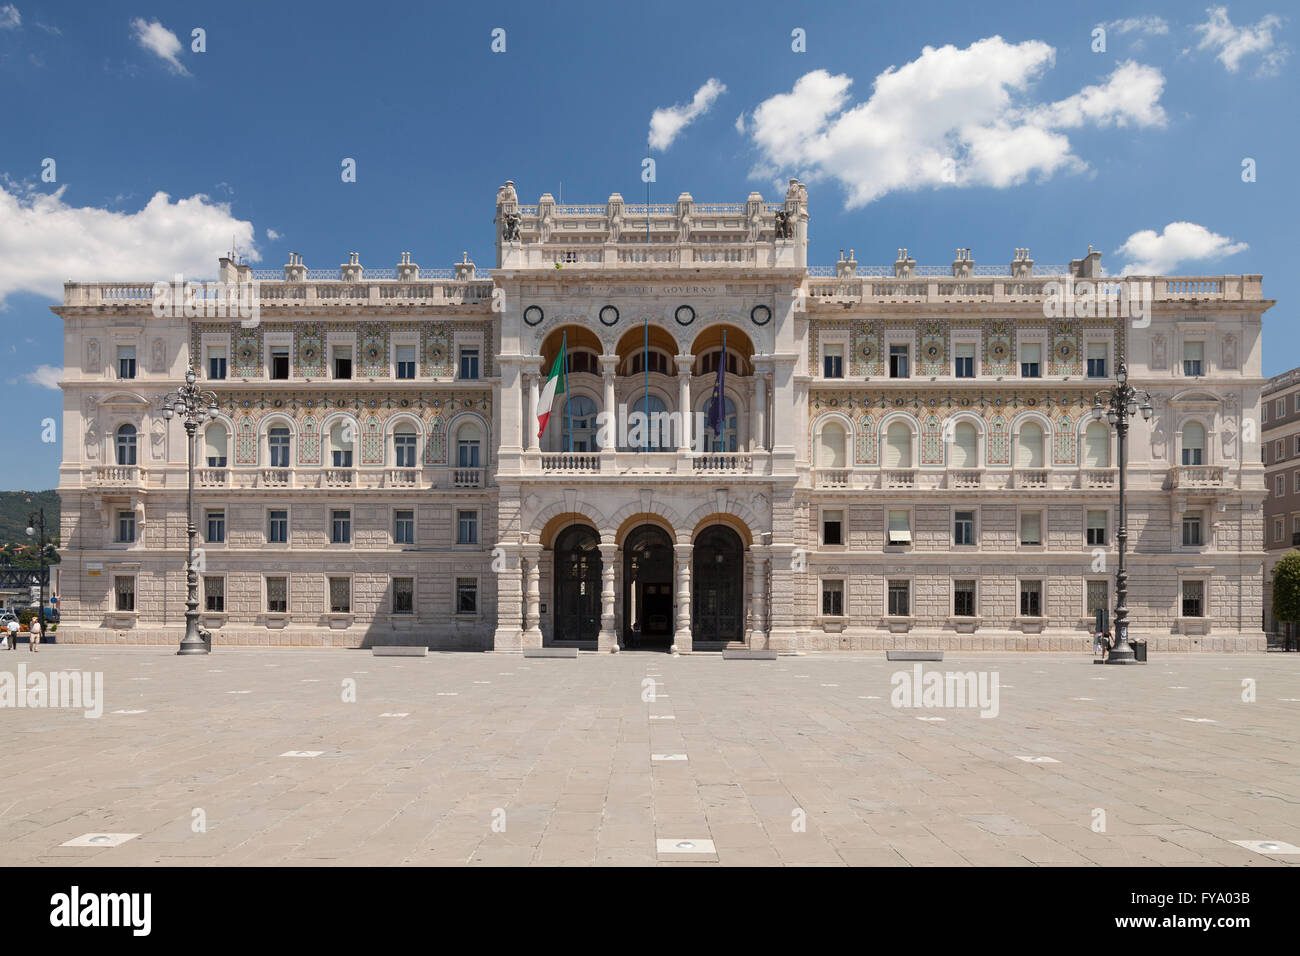 Palazzo del Governo, Piazza Unita d'Italia, Trieste, Friuli-Venezia Giulia, Italy Stock Photo